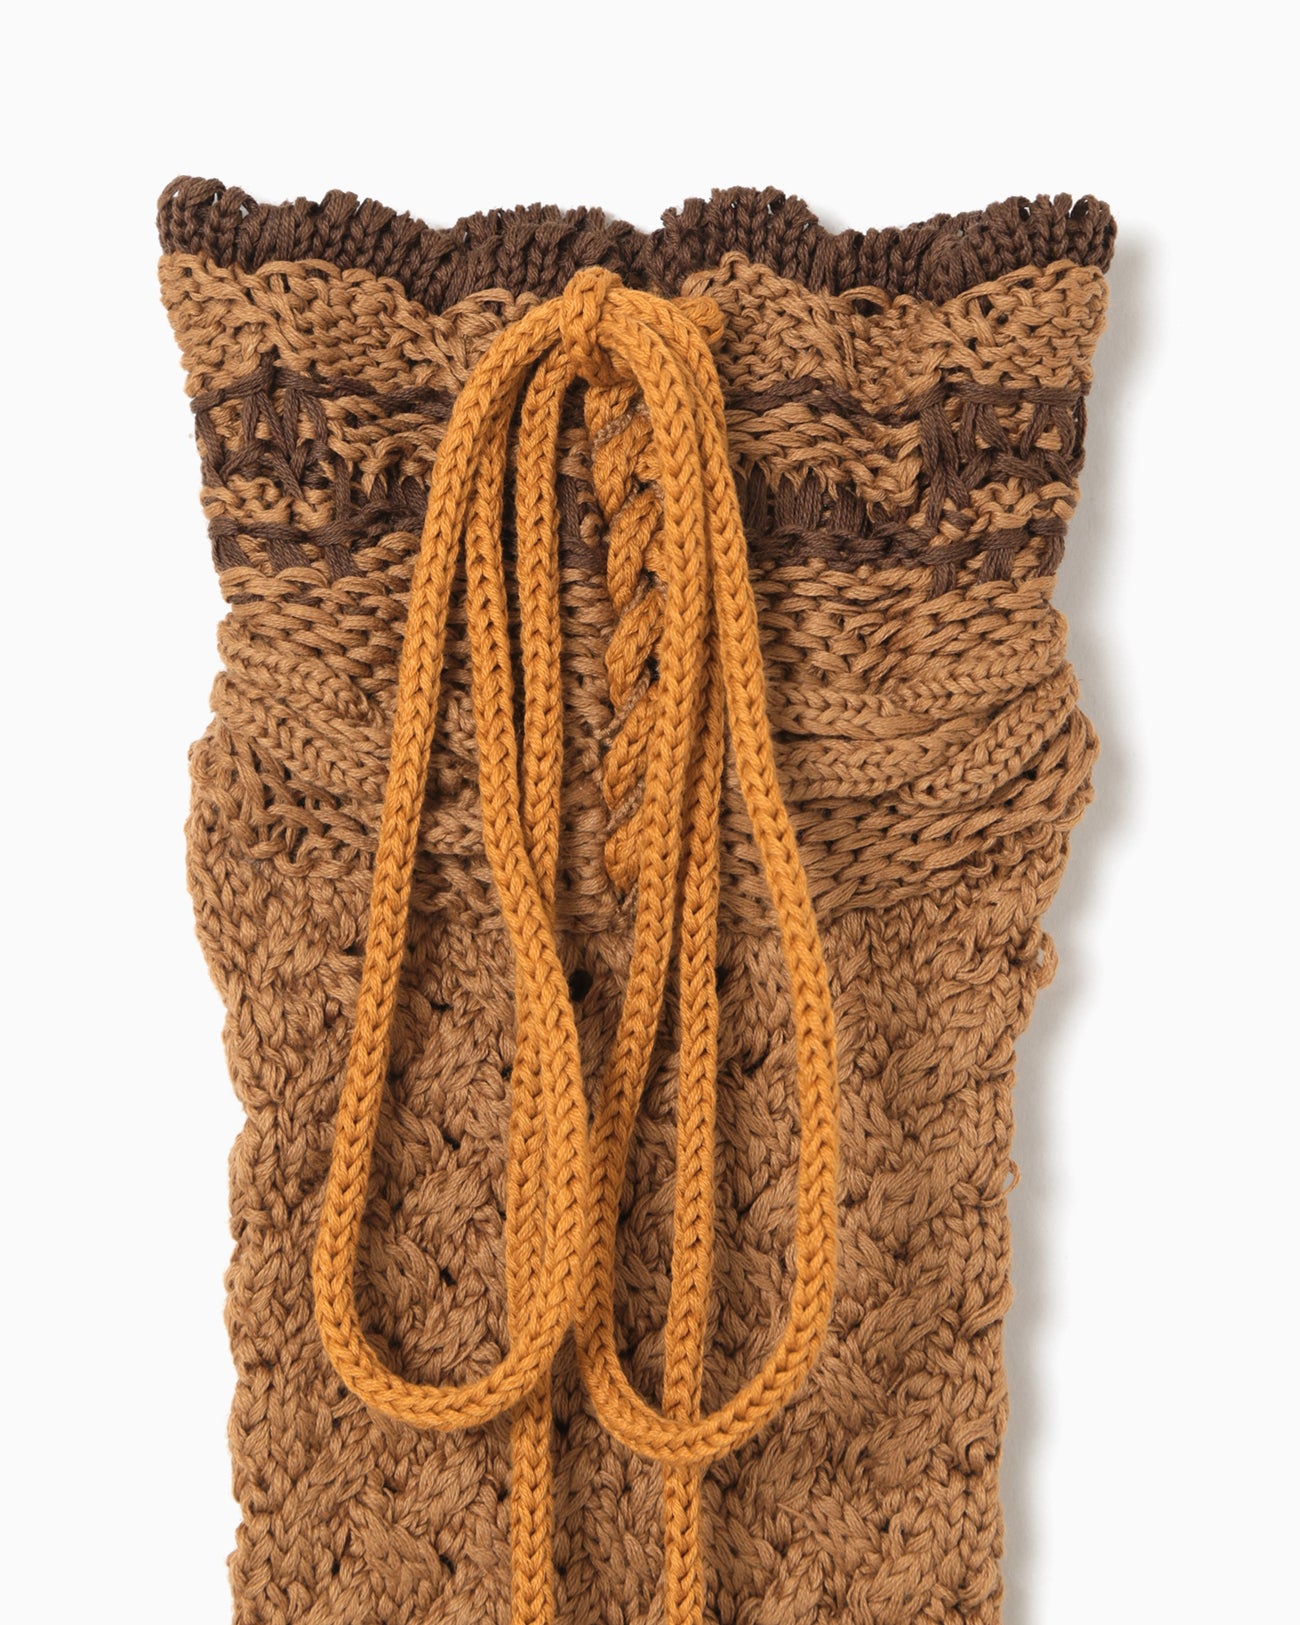 Knitted Tabi Socks - brown